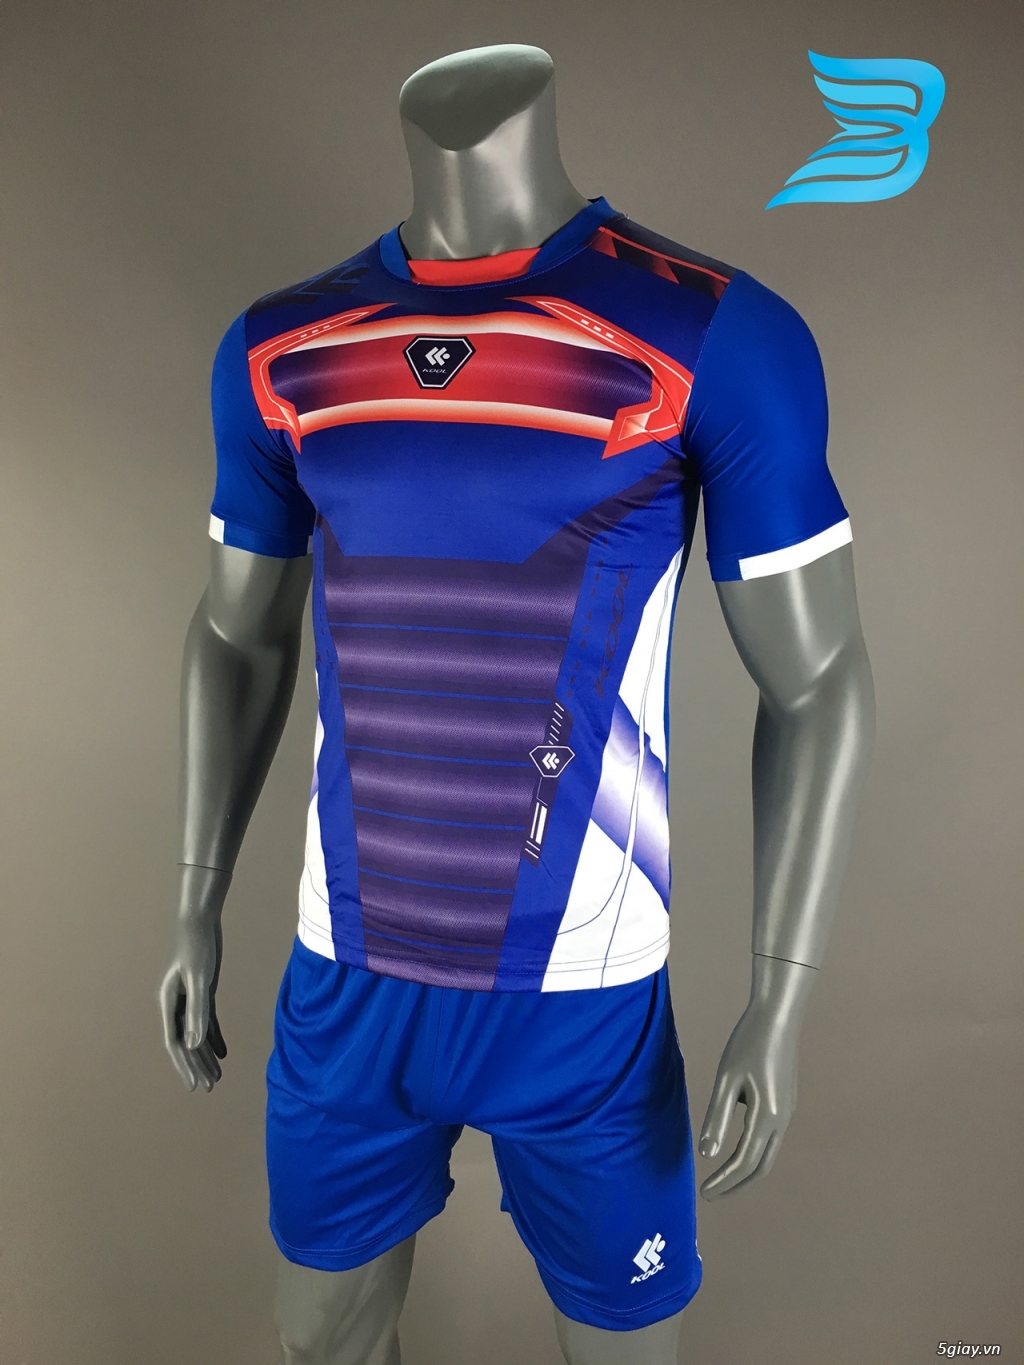 BẢO UYÊN SPORT - Chuyên cung cấp quần áo bóng đá với giá cạnh tranh kèm nhiều ưu đãi - 27